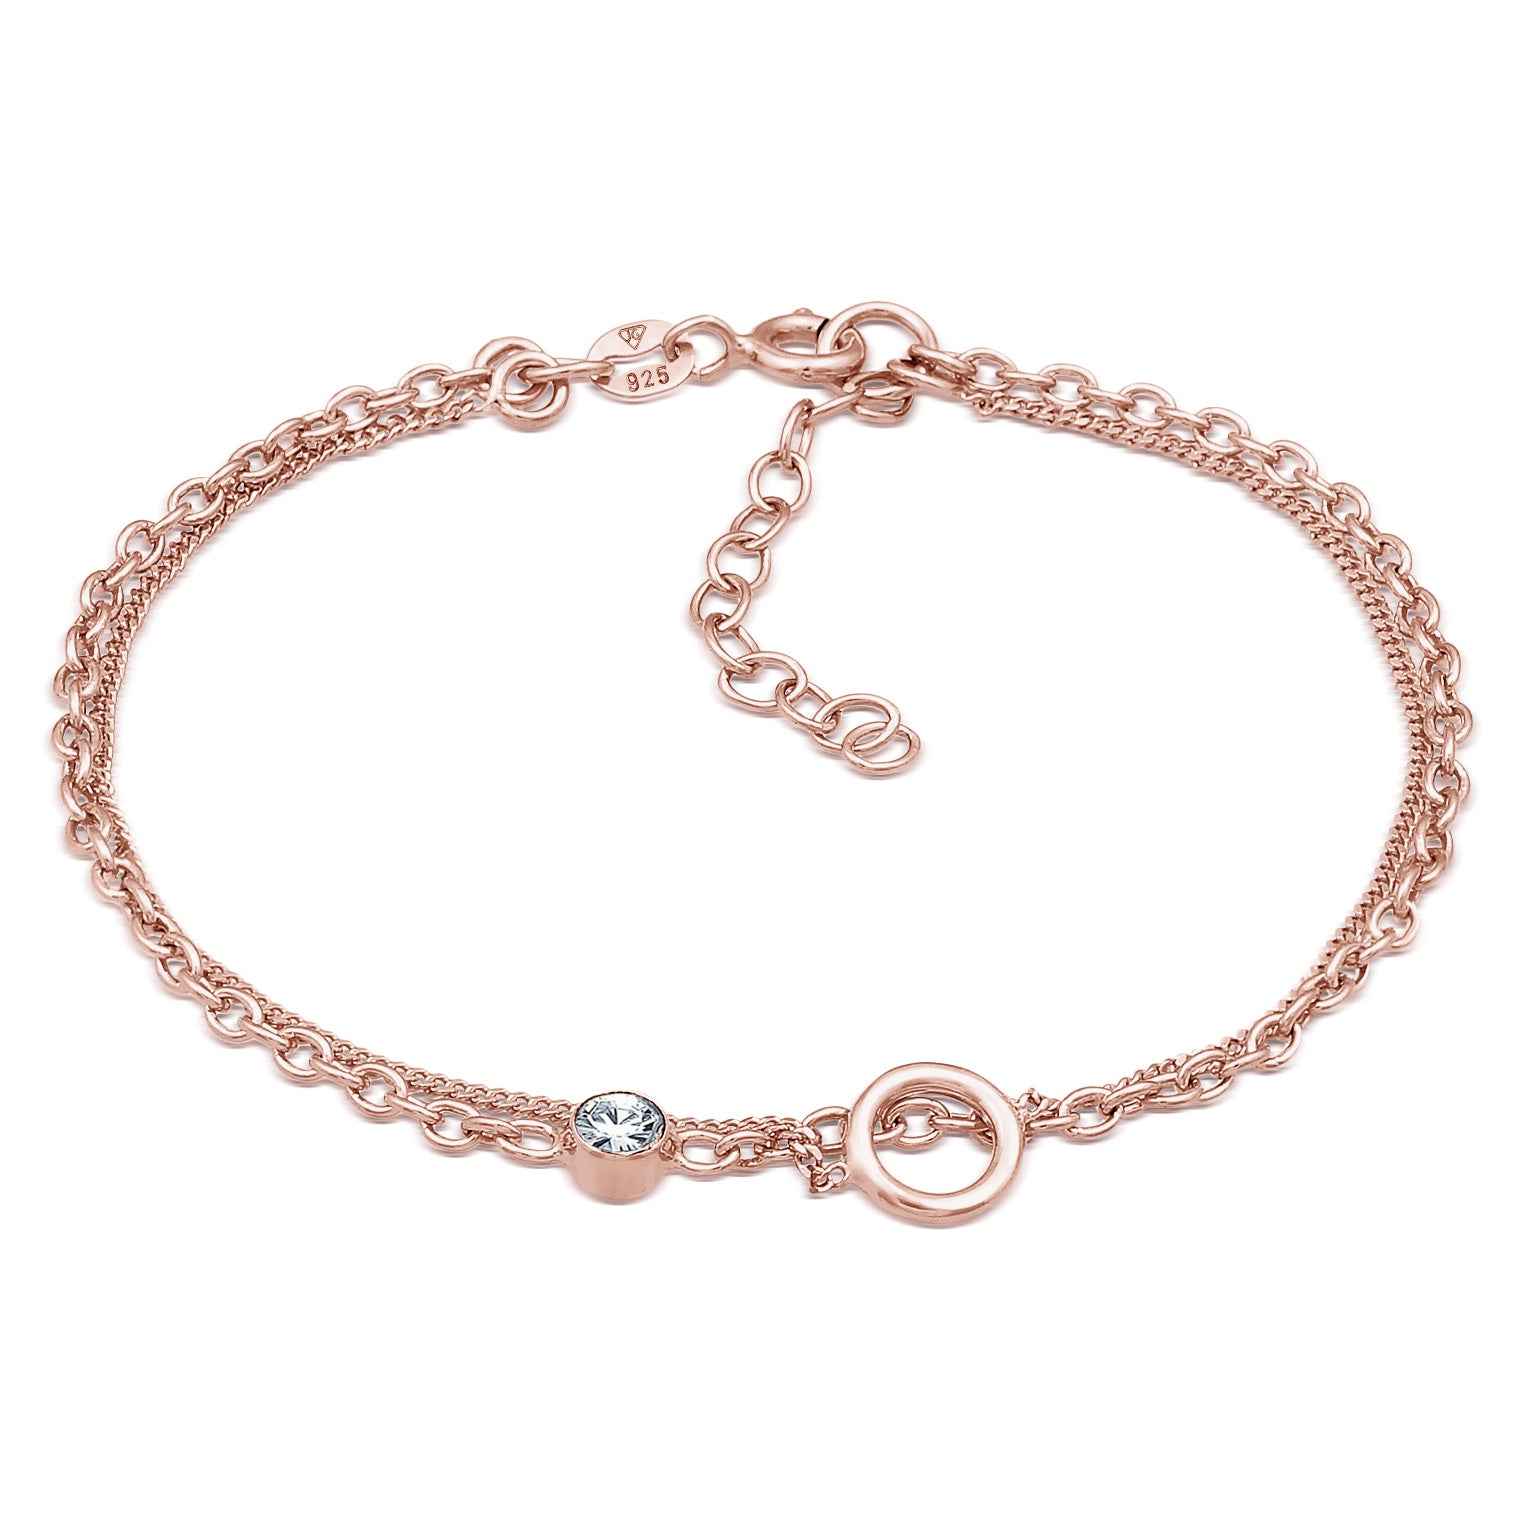 Buy bracelets in Elli\'s online Elli – Jewelry shop